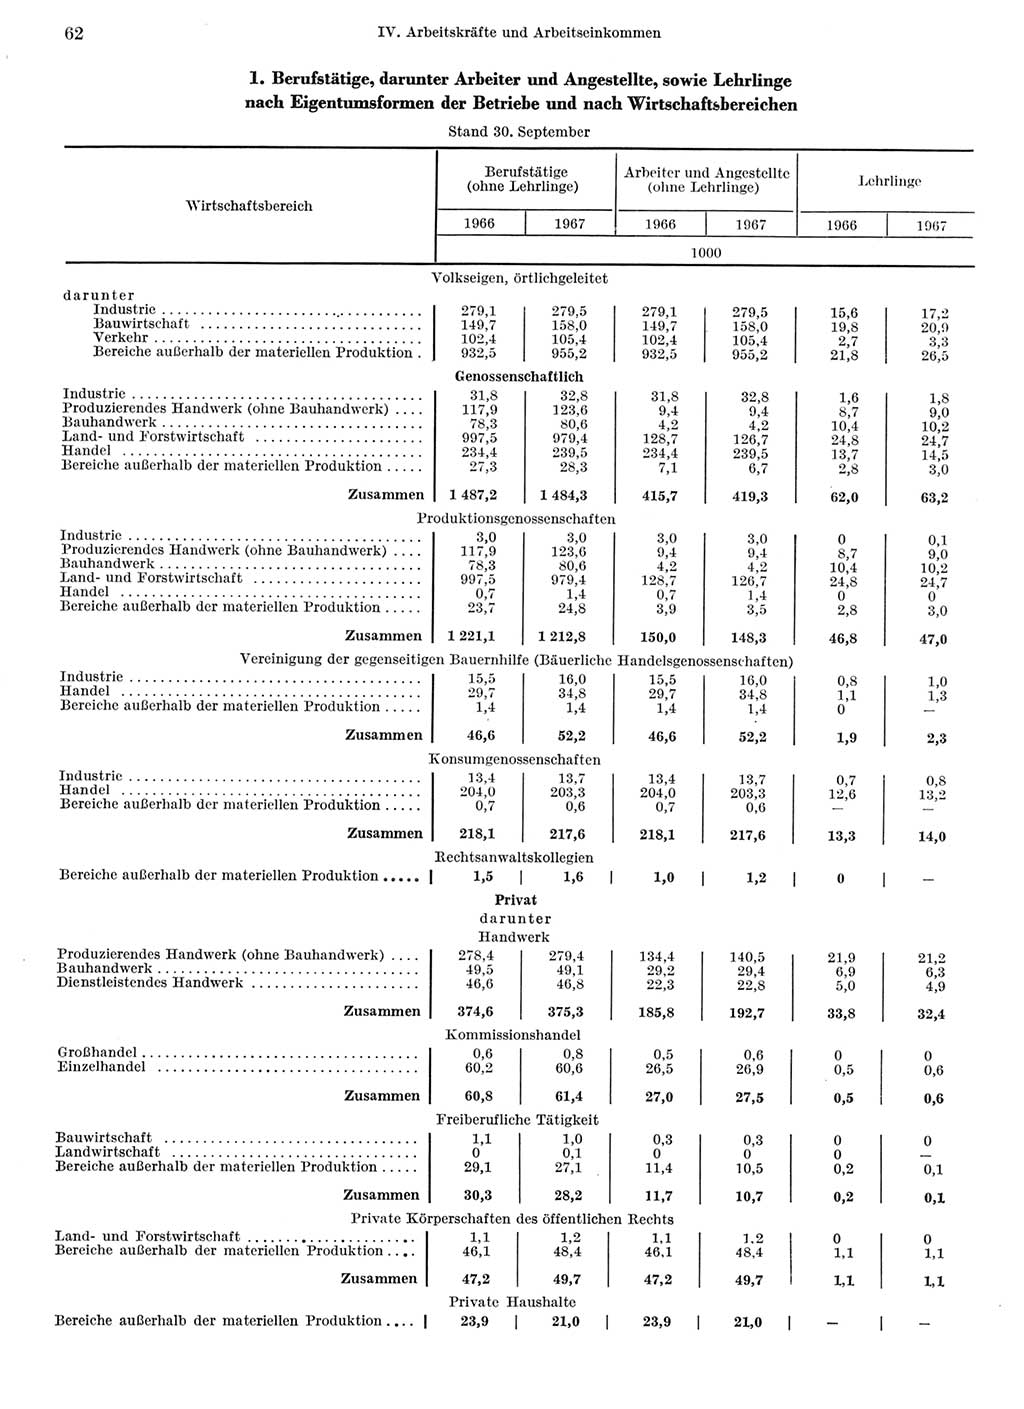 Statistisches Jahrbuch der Deutschen Demokratischen Republik (DDR) 1968, Seite 62 (Stat. Jb. DDR 1968, S. 62)